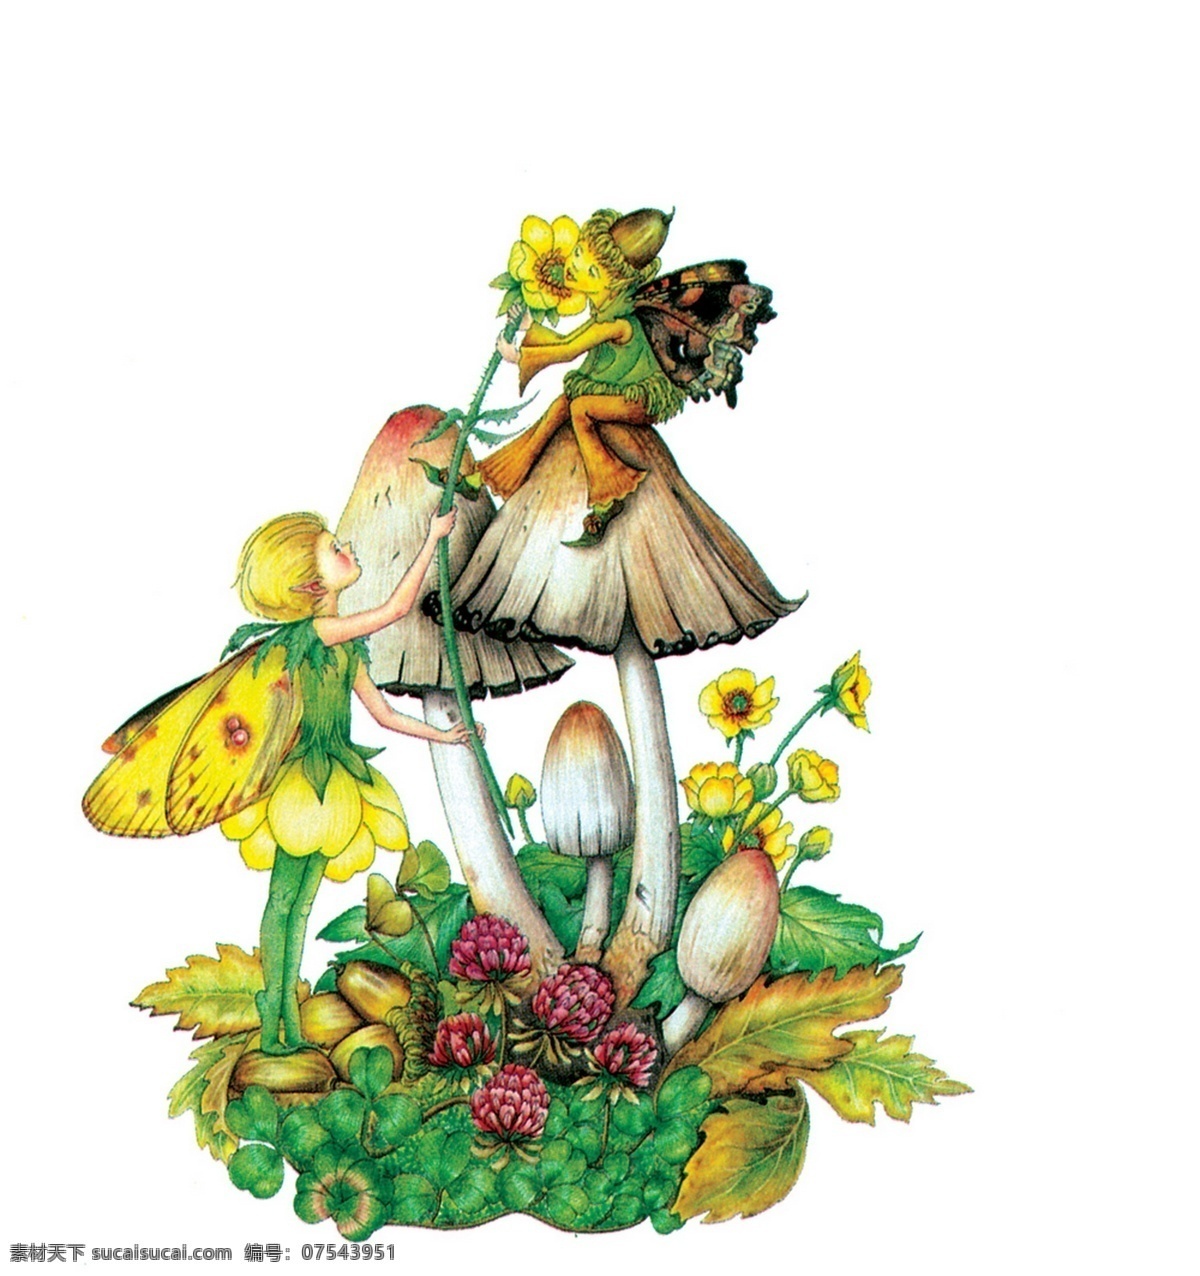 插画 插图 翅膀 动漫 动漫动画 动漫人物 花 精灵 仙子与蘑菇 仙子 蘑菇 欧洲 神话 童话 童话艺术图典 插画集